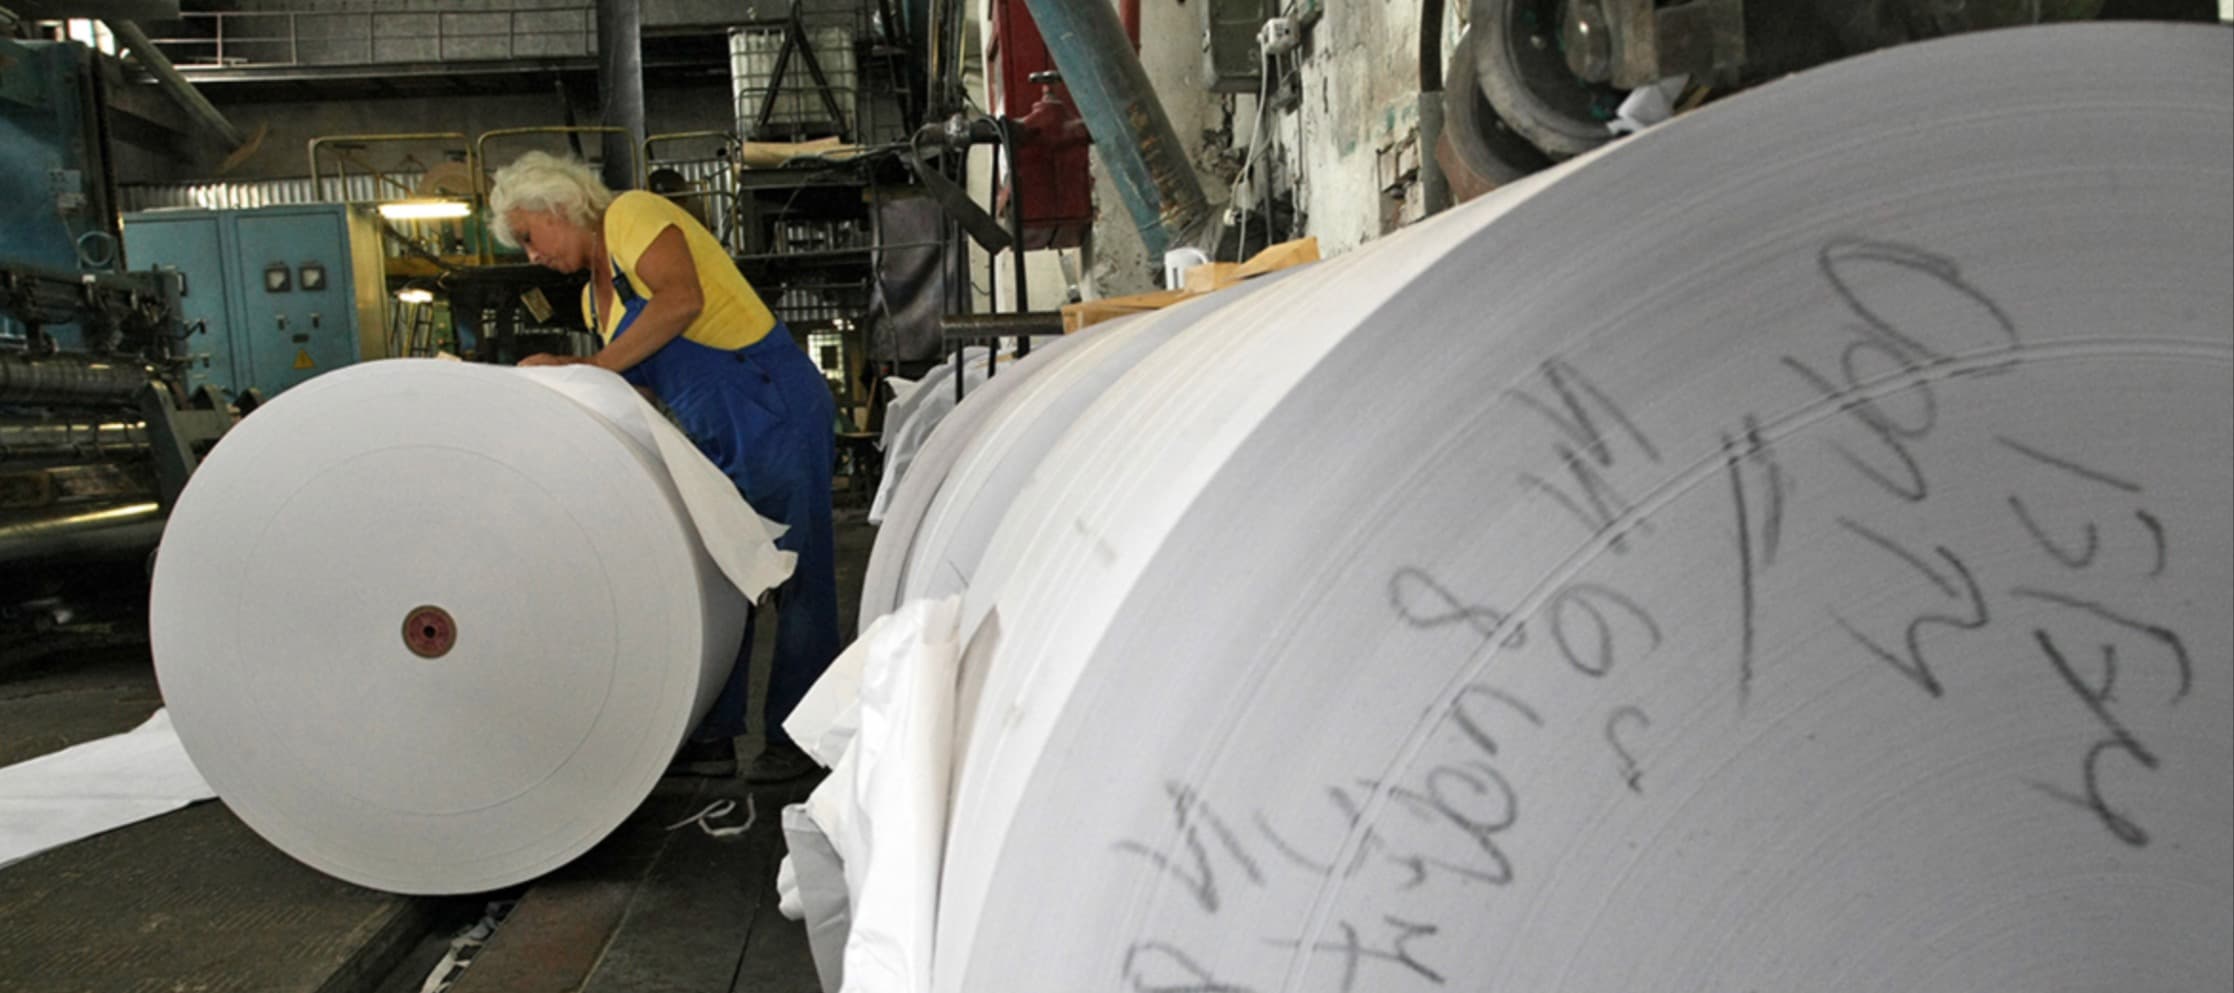 Фото новости: "В Европе возник дефицит бумаги из-за высокого спроса и забастовок производителей"